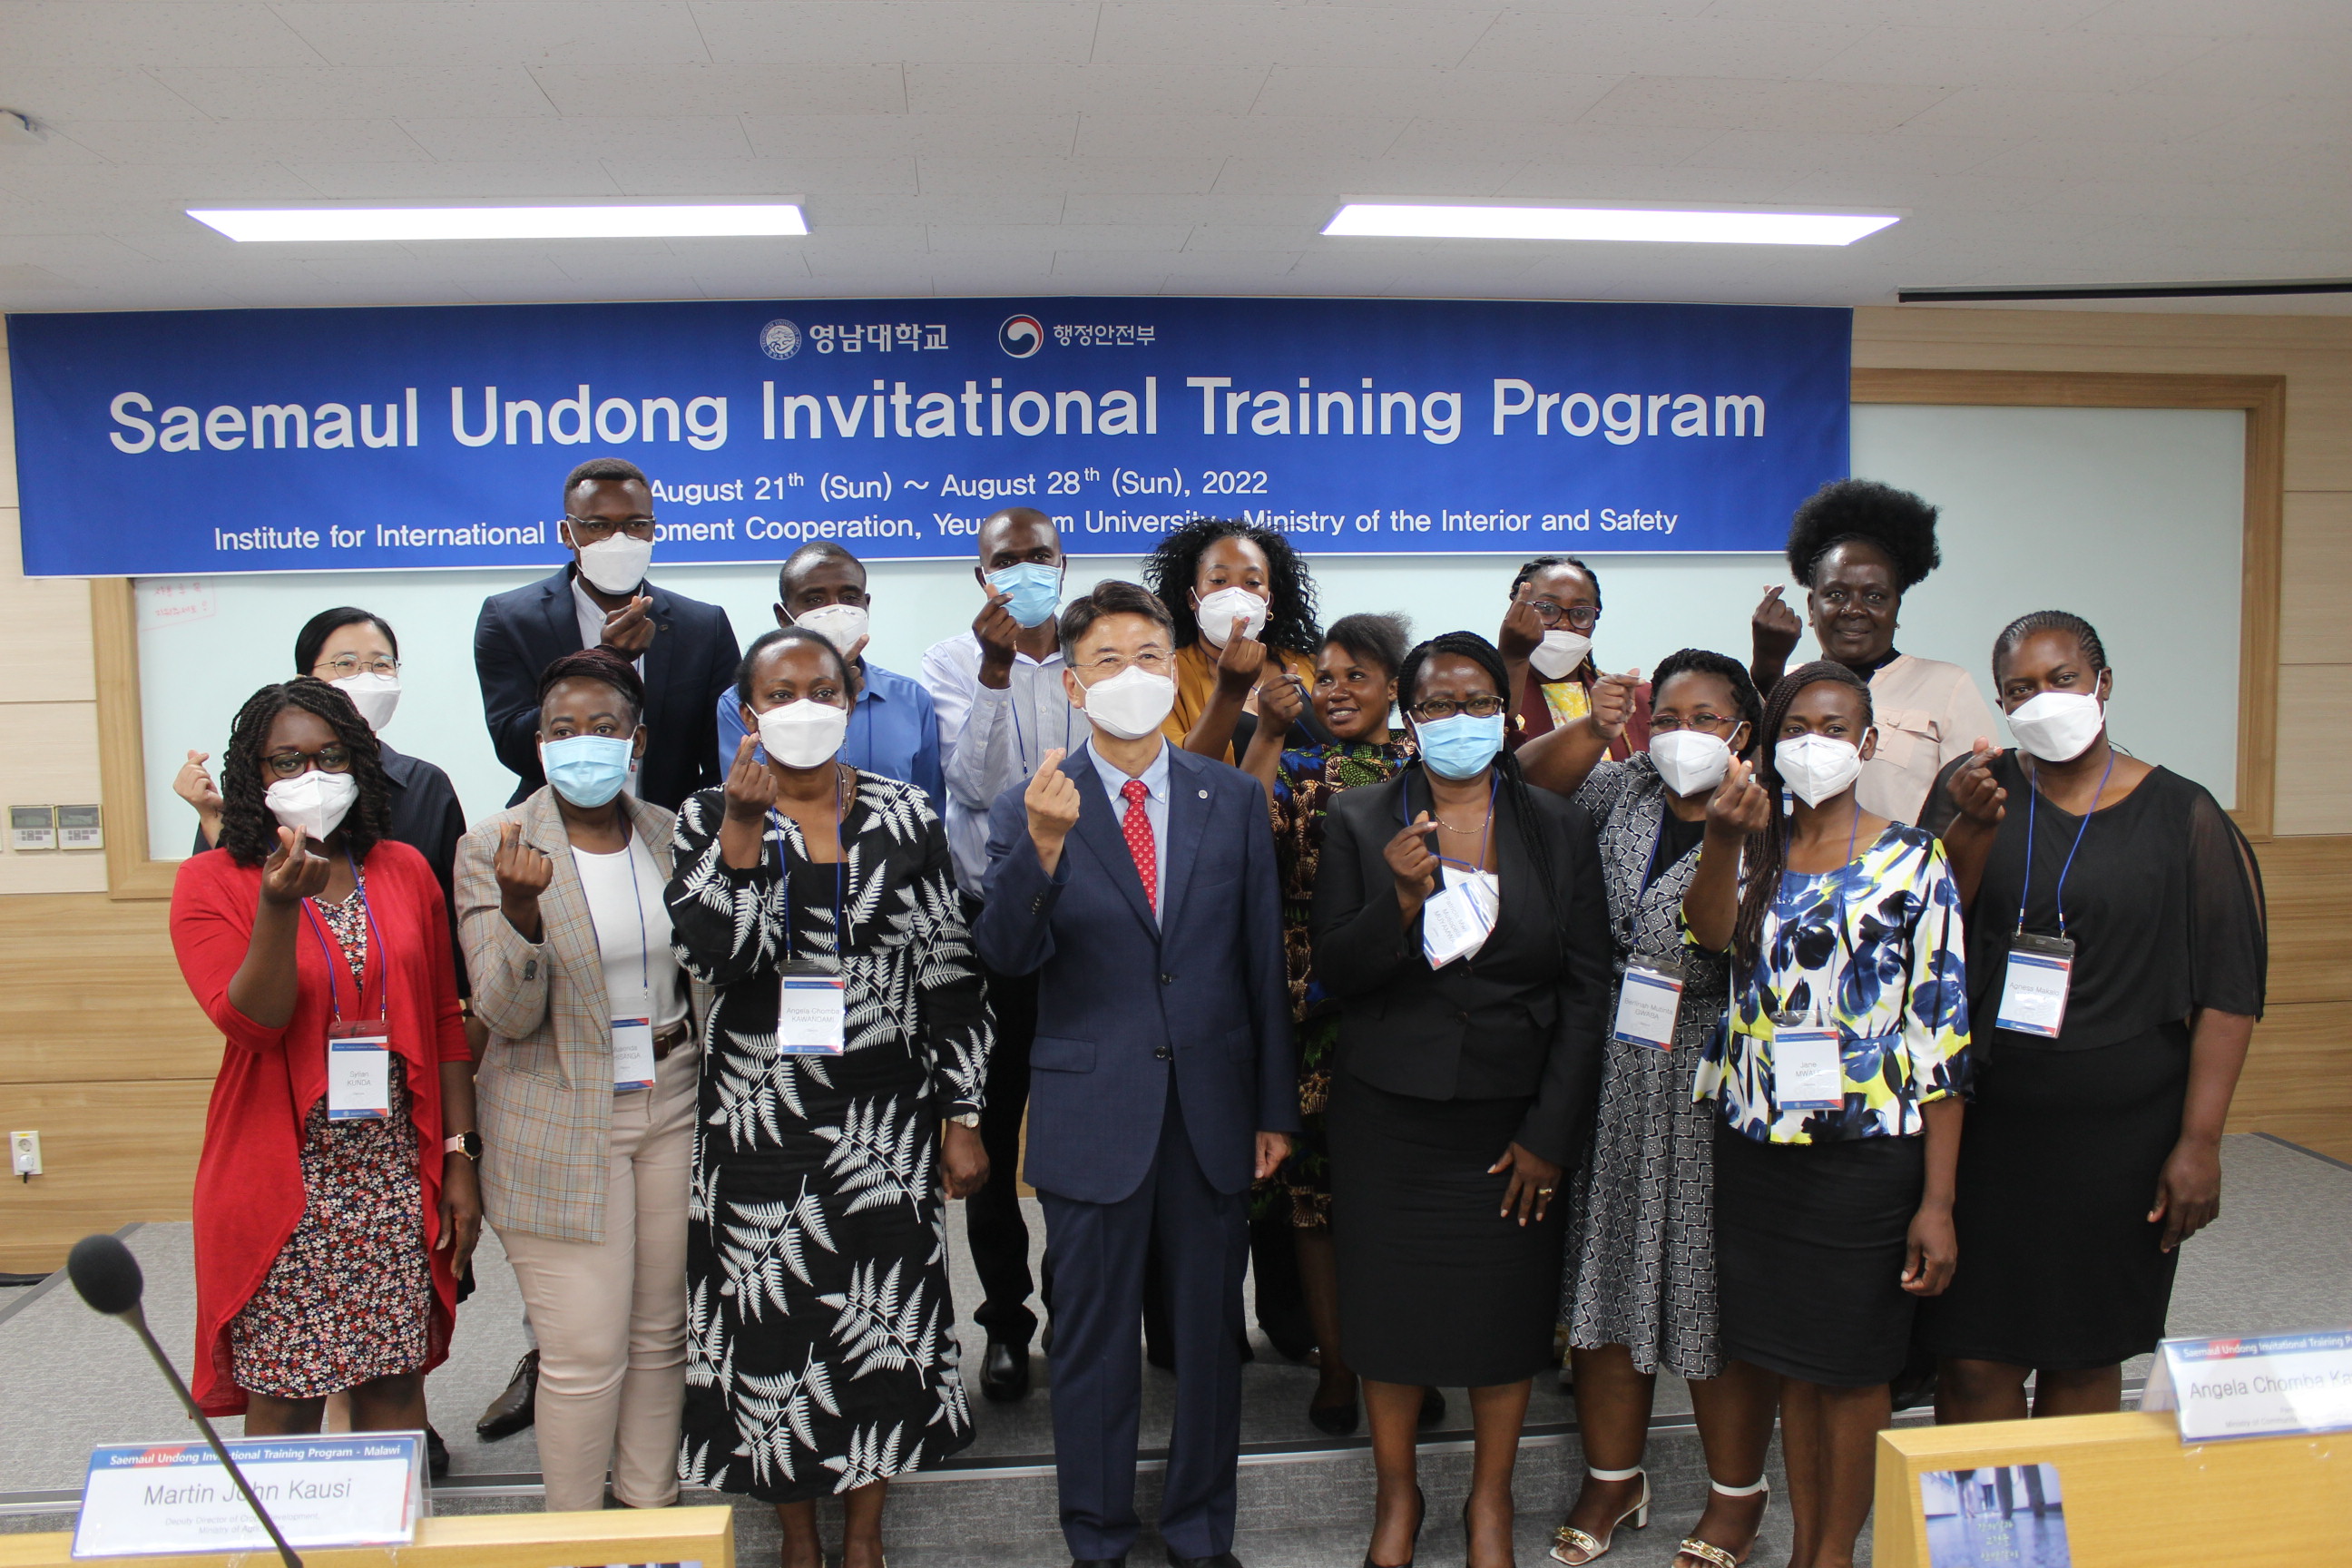 2022 Saemaul Undong Invitational Training Program for Malawi and Zambia